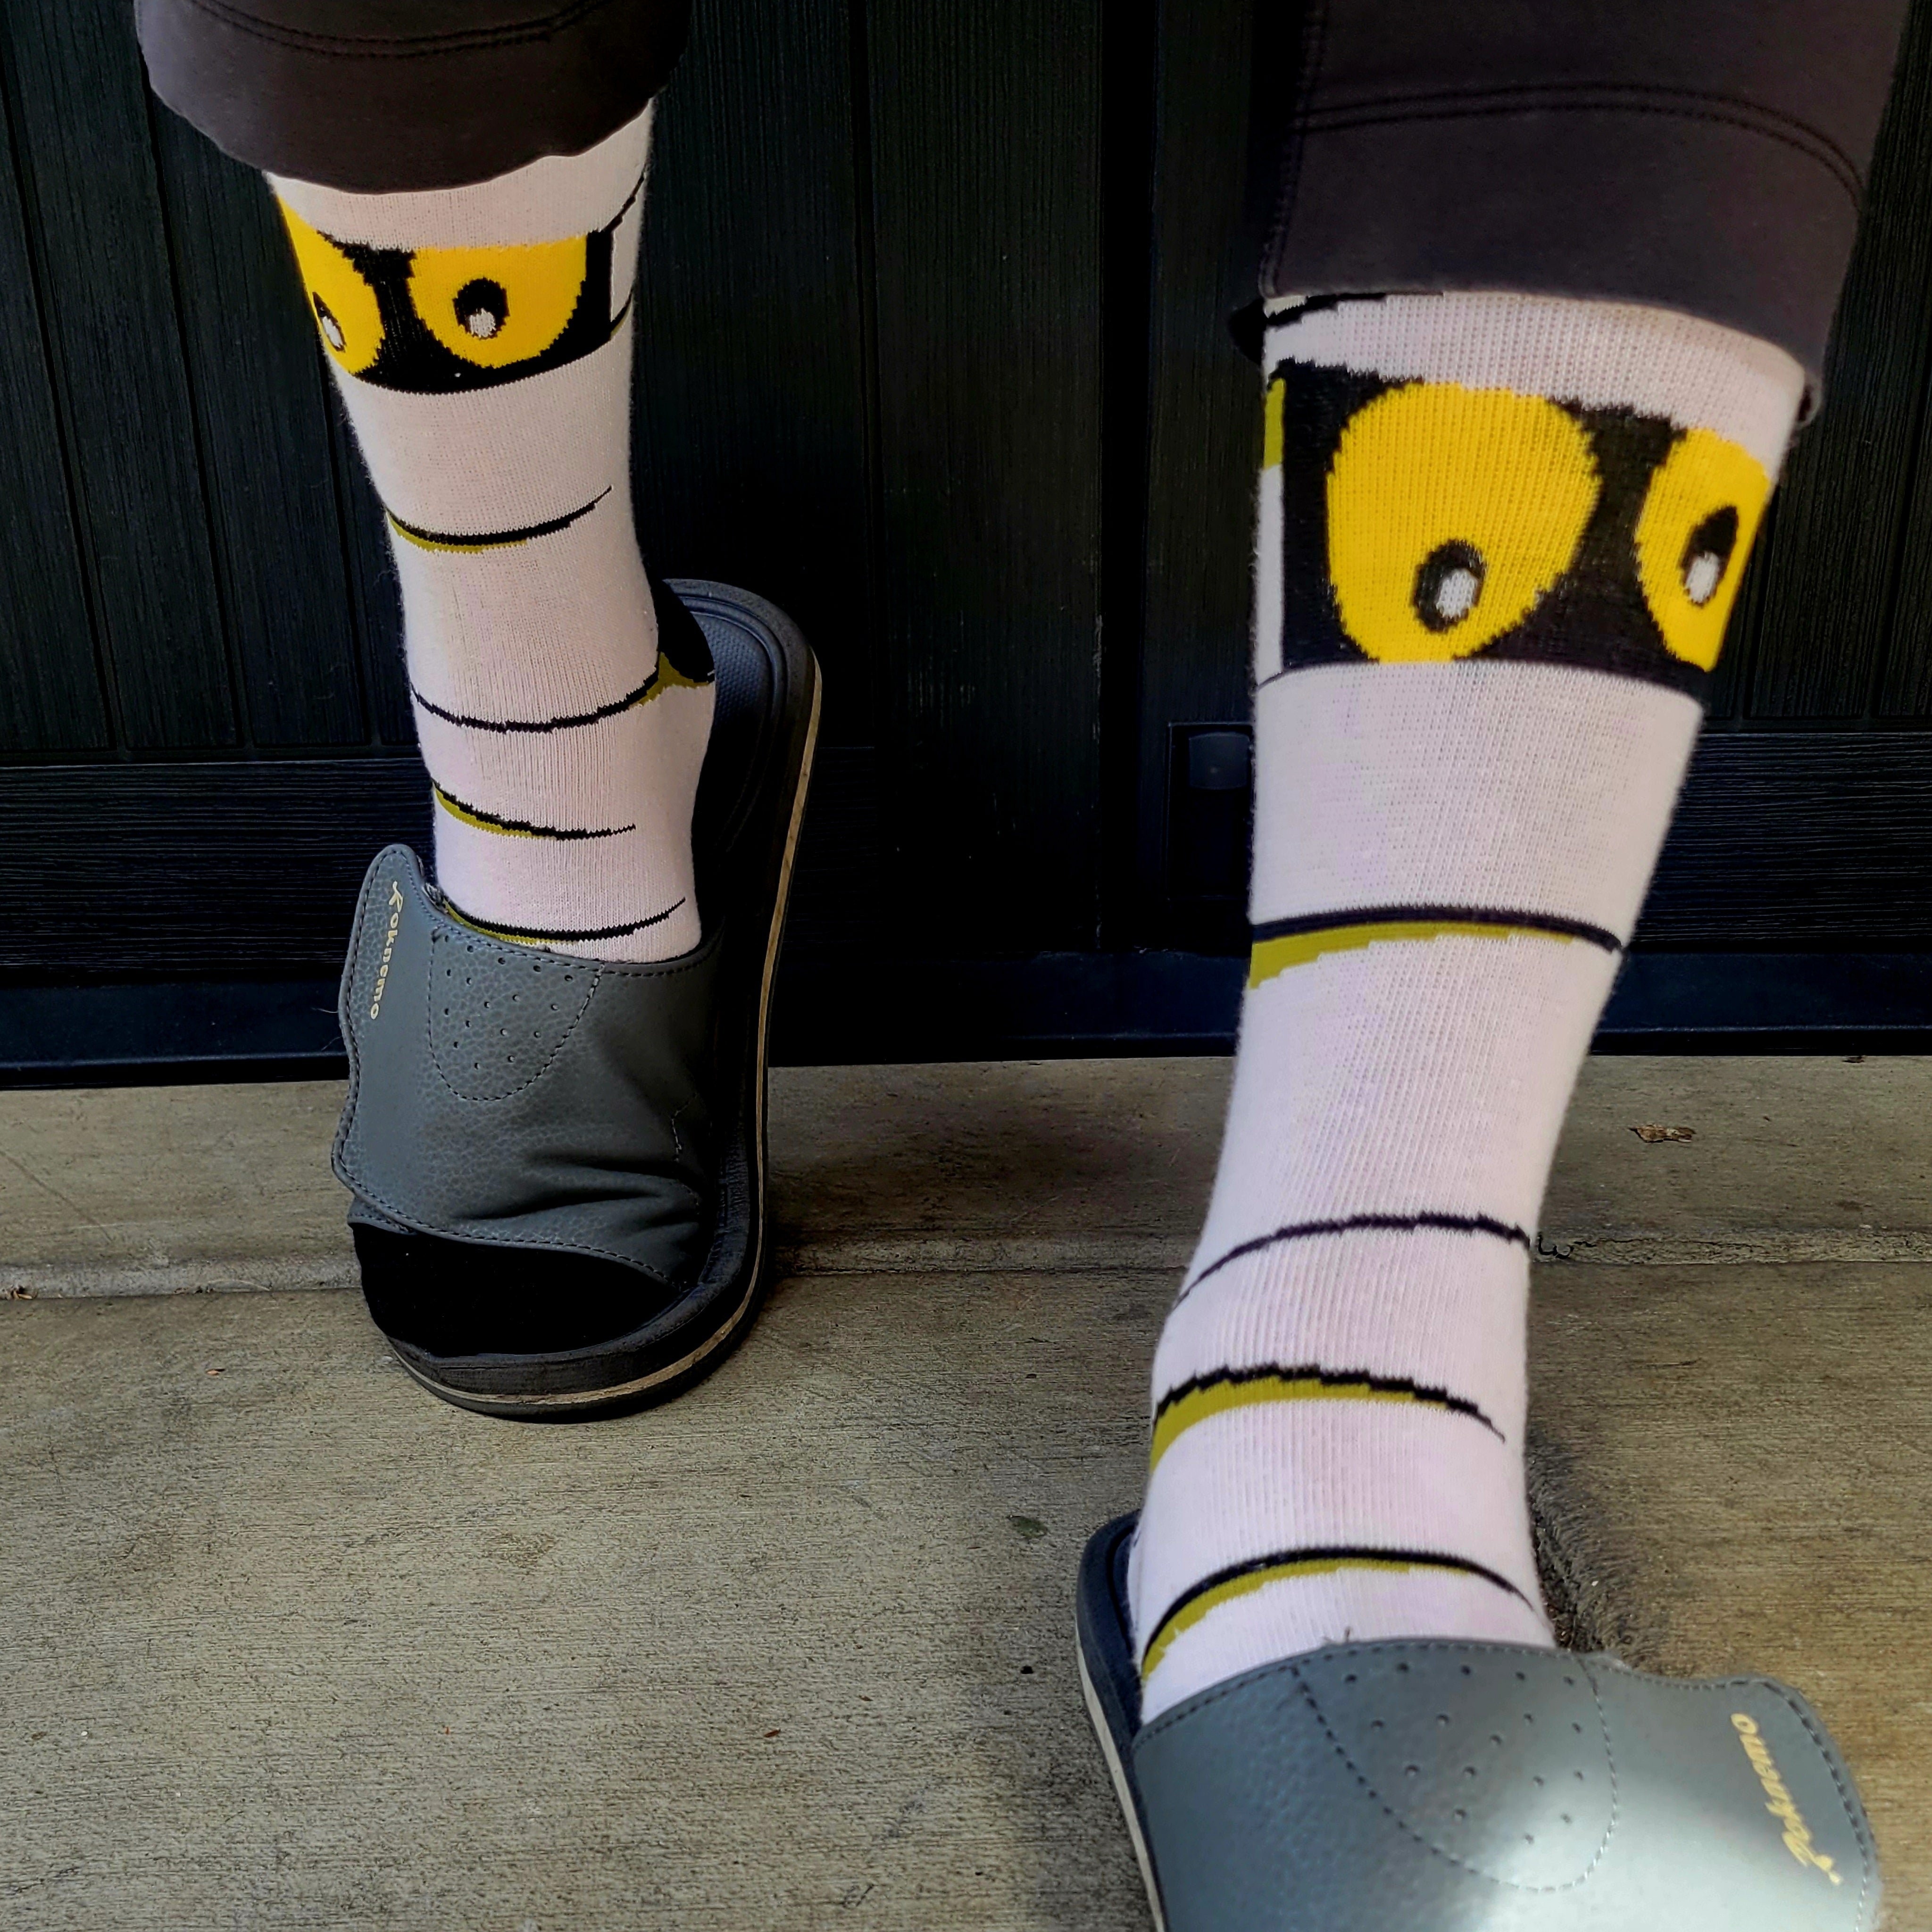 Mummy Socks from the Sock Panda